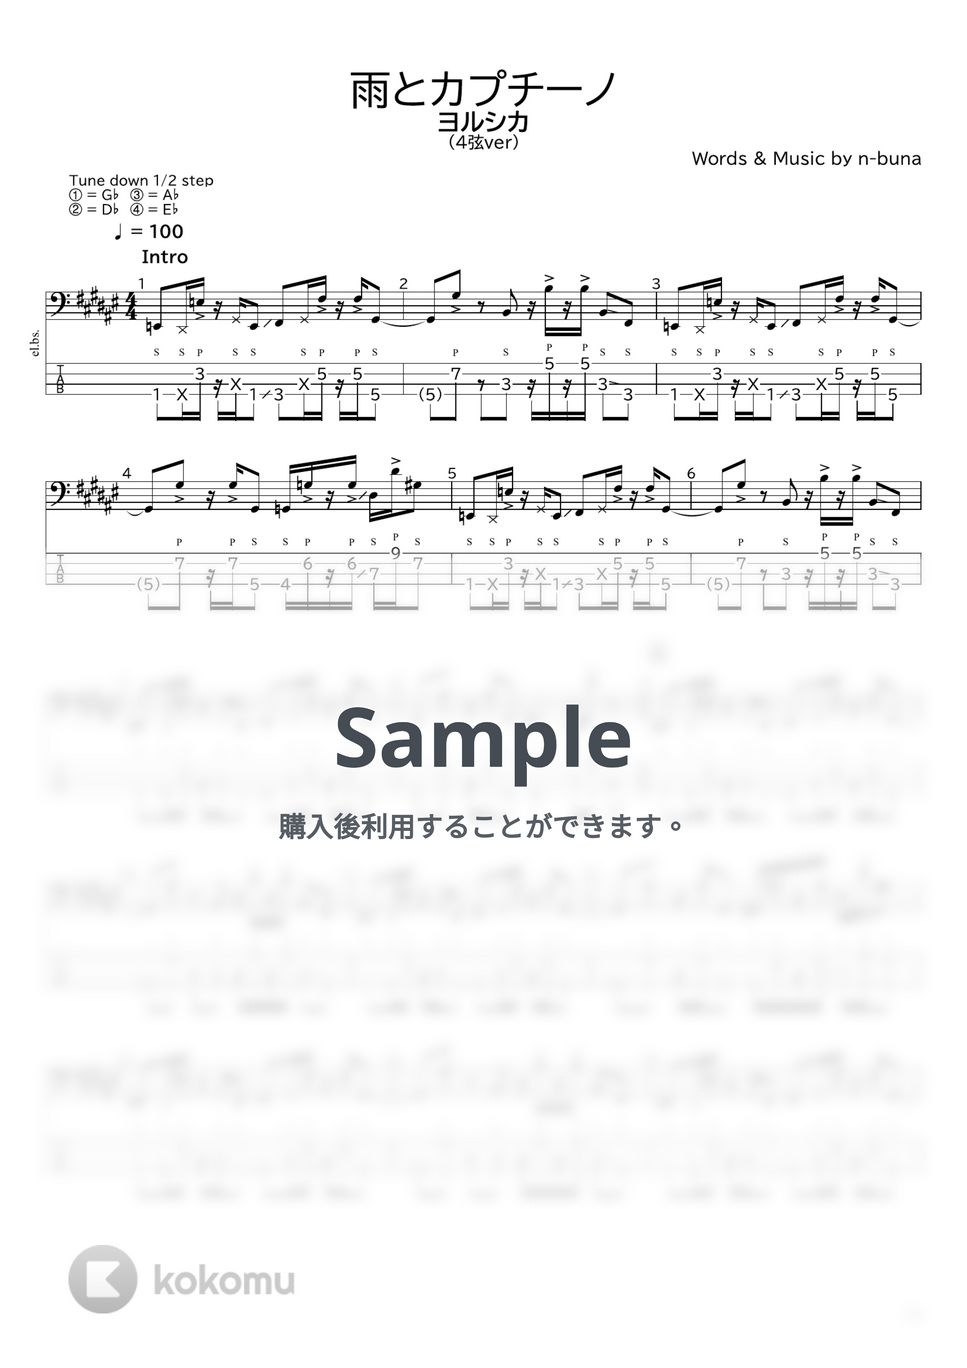 ヨルシカ - 雨とカプチーノ(4弦ver) by たぶべー